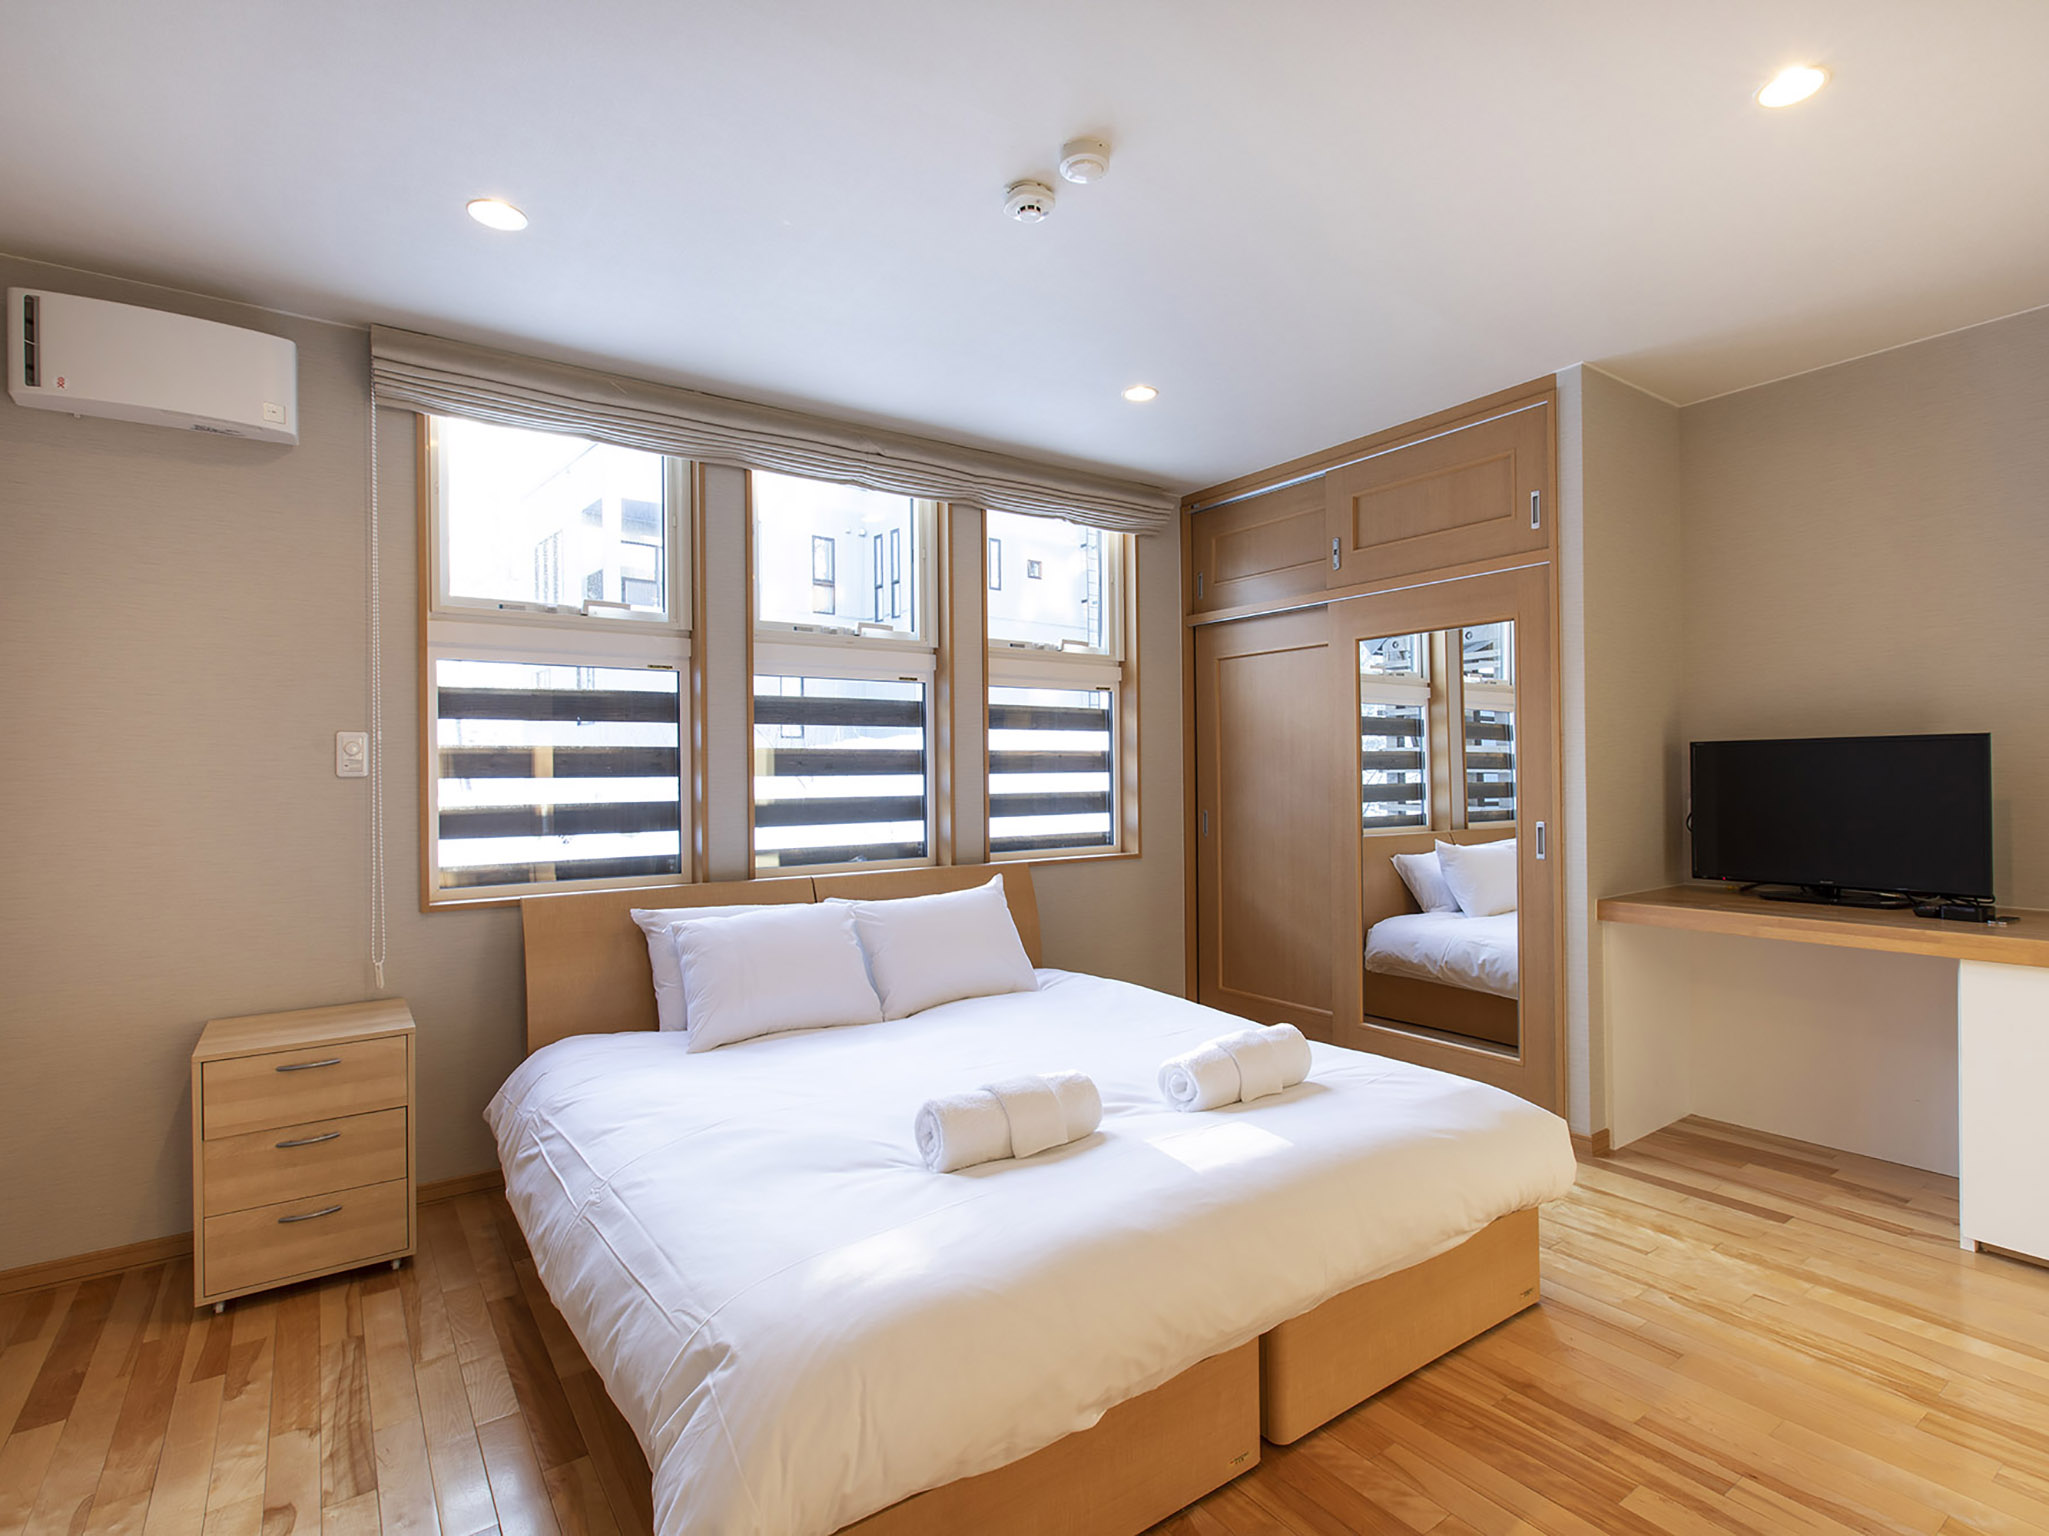 Casi67 East - Guest bedroom design